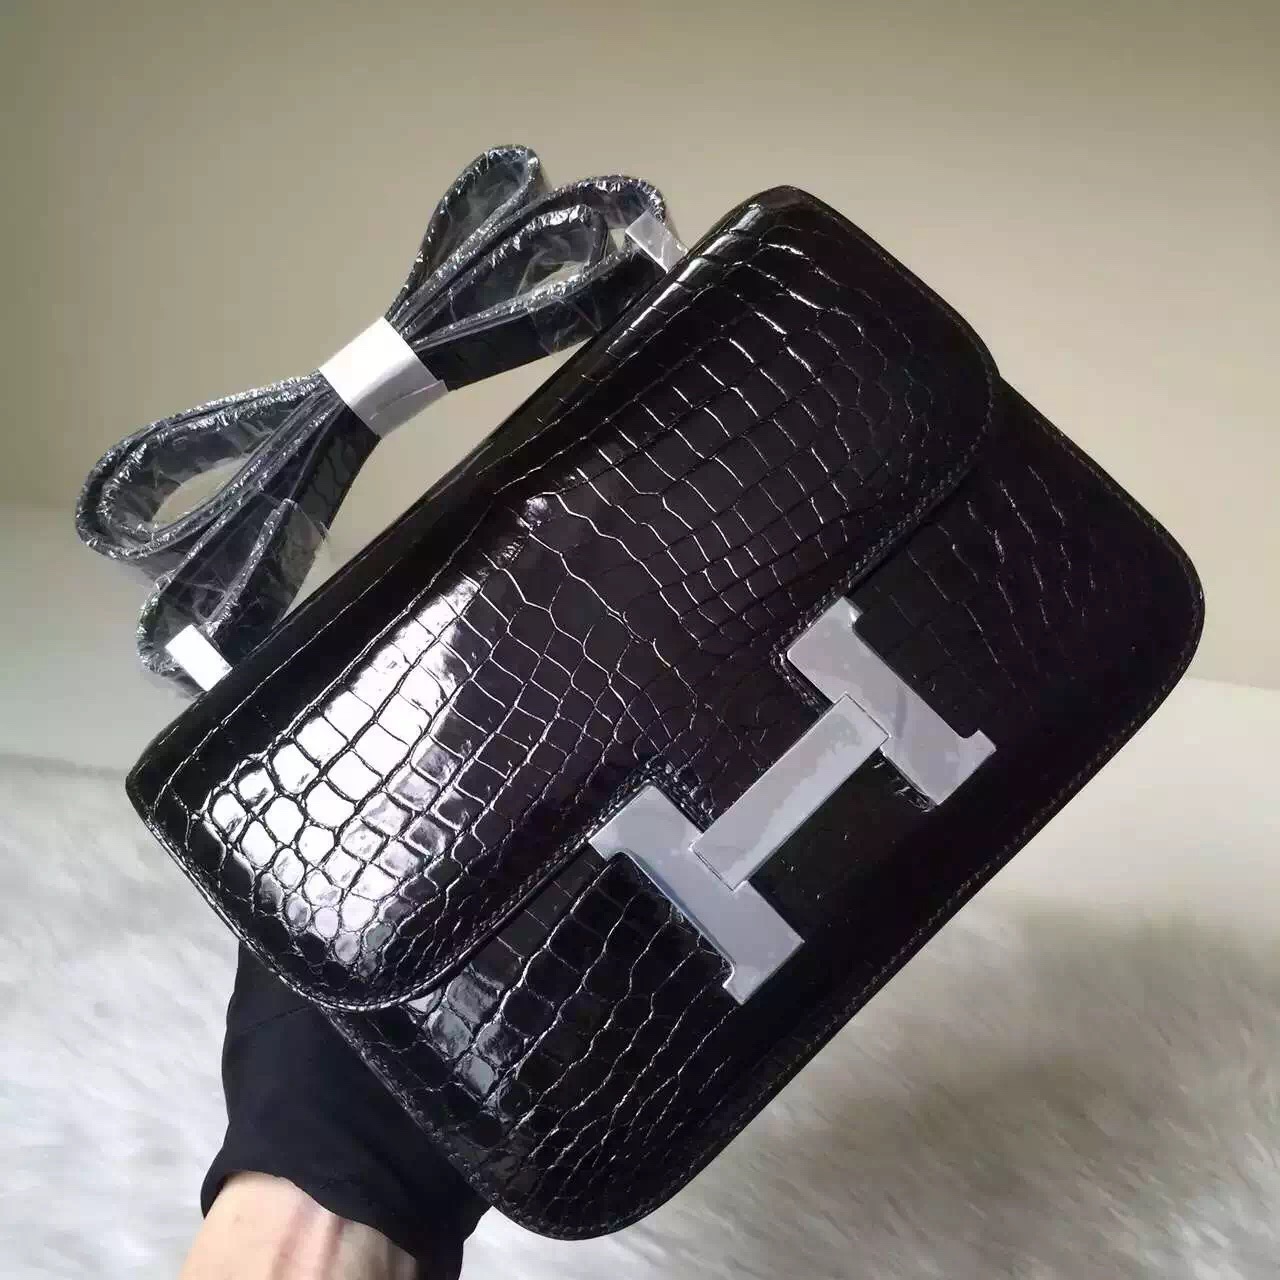 New Elegant Hermes CK89 Black Crocodile Leather Constance Bag24CM